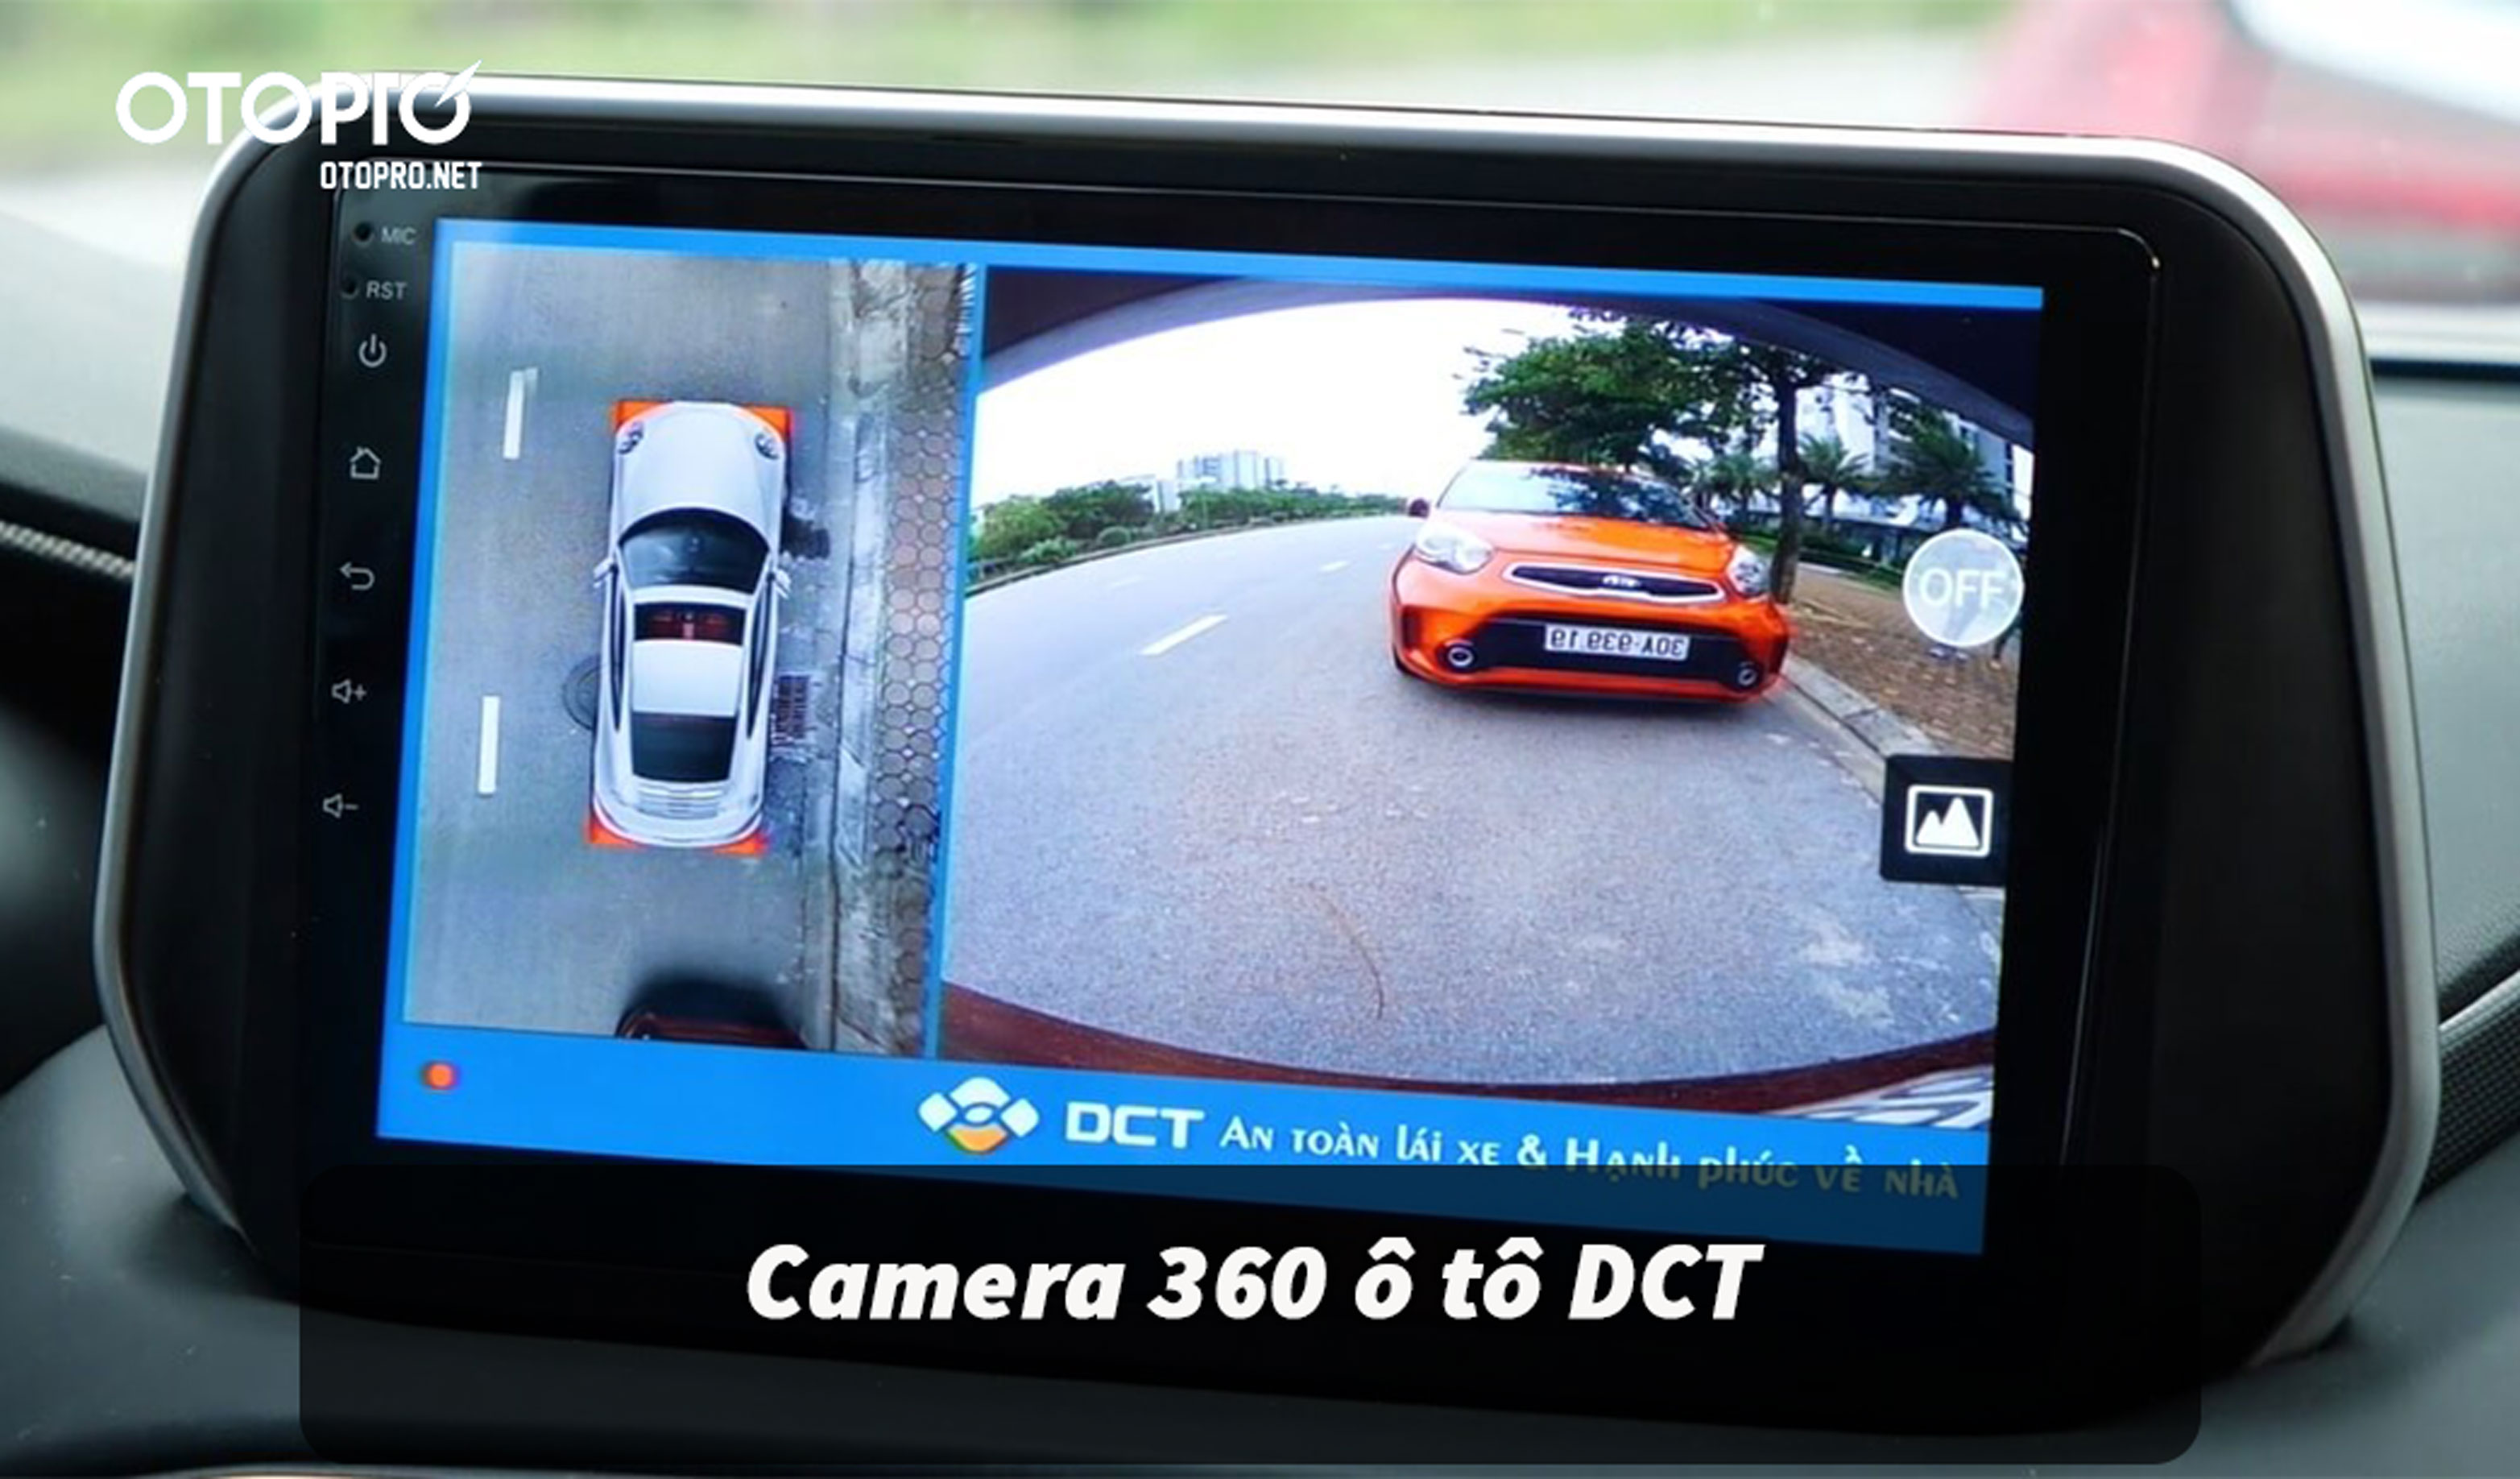 Camera 360 ô tô DCT